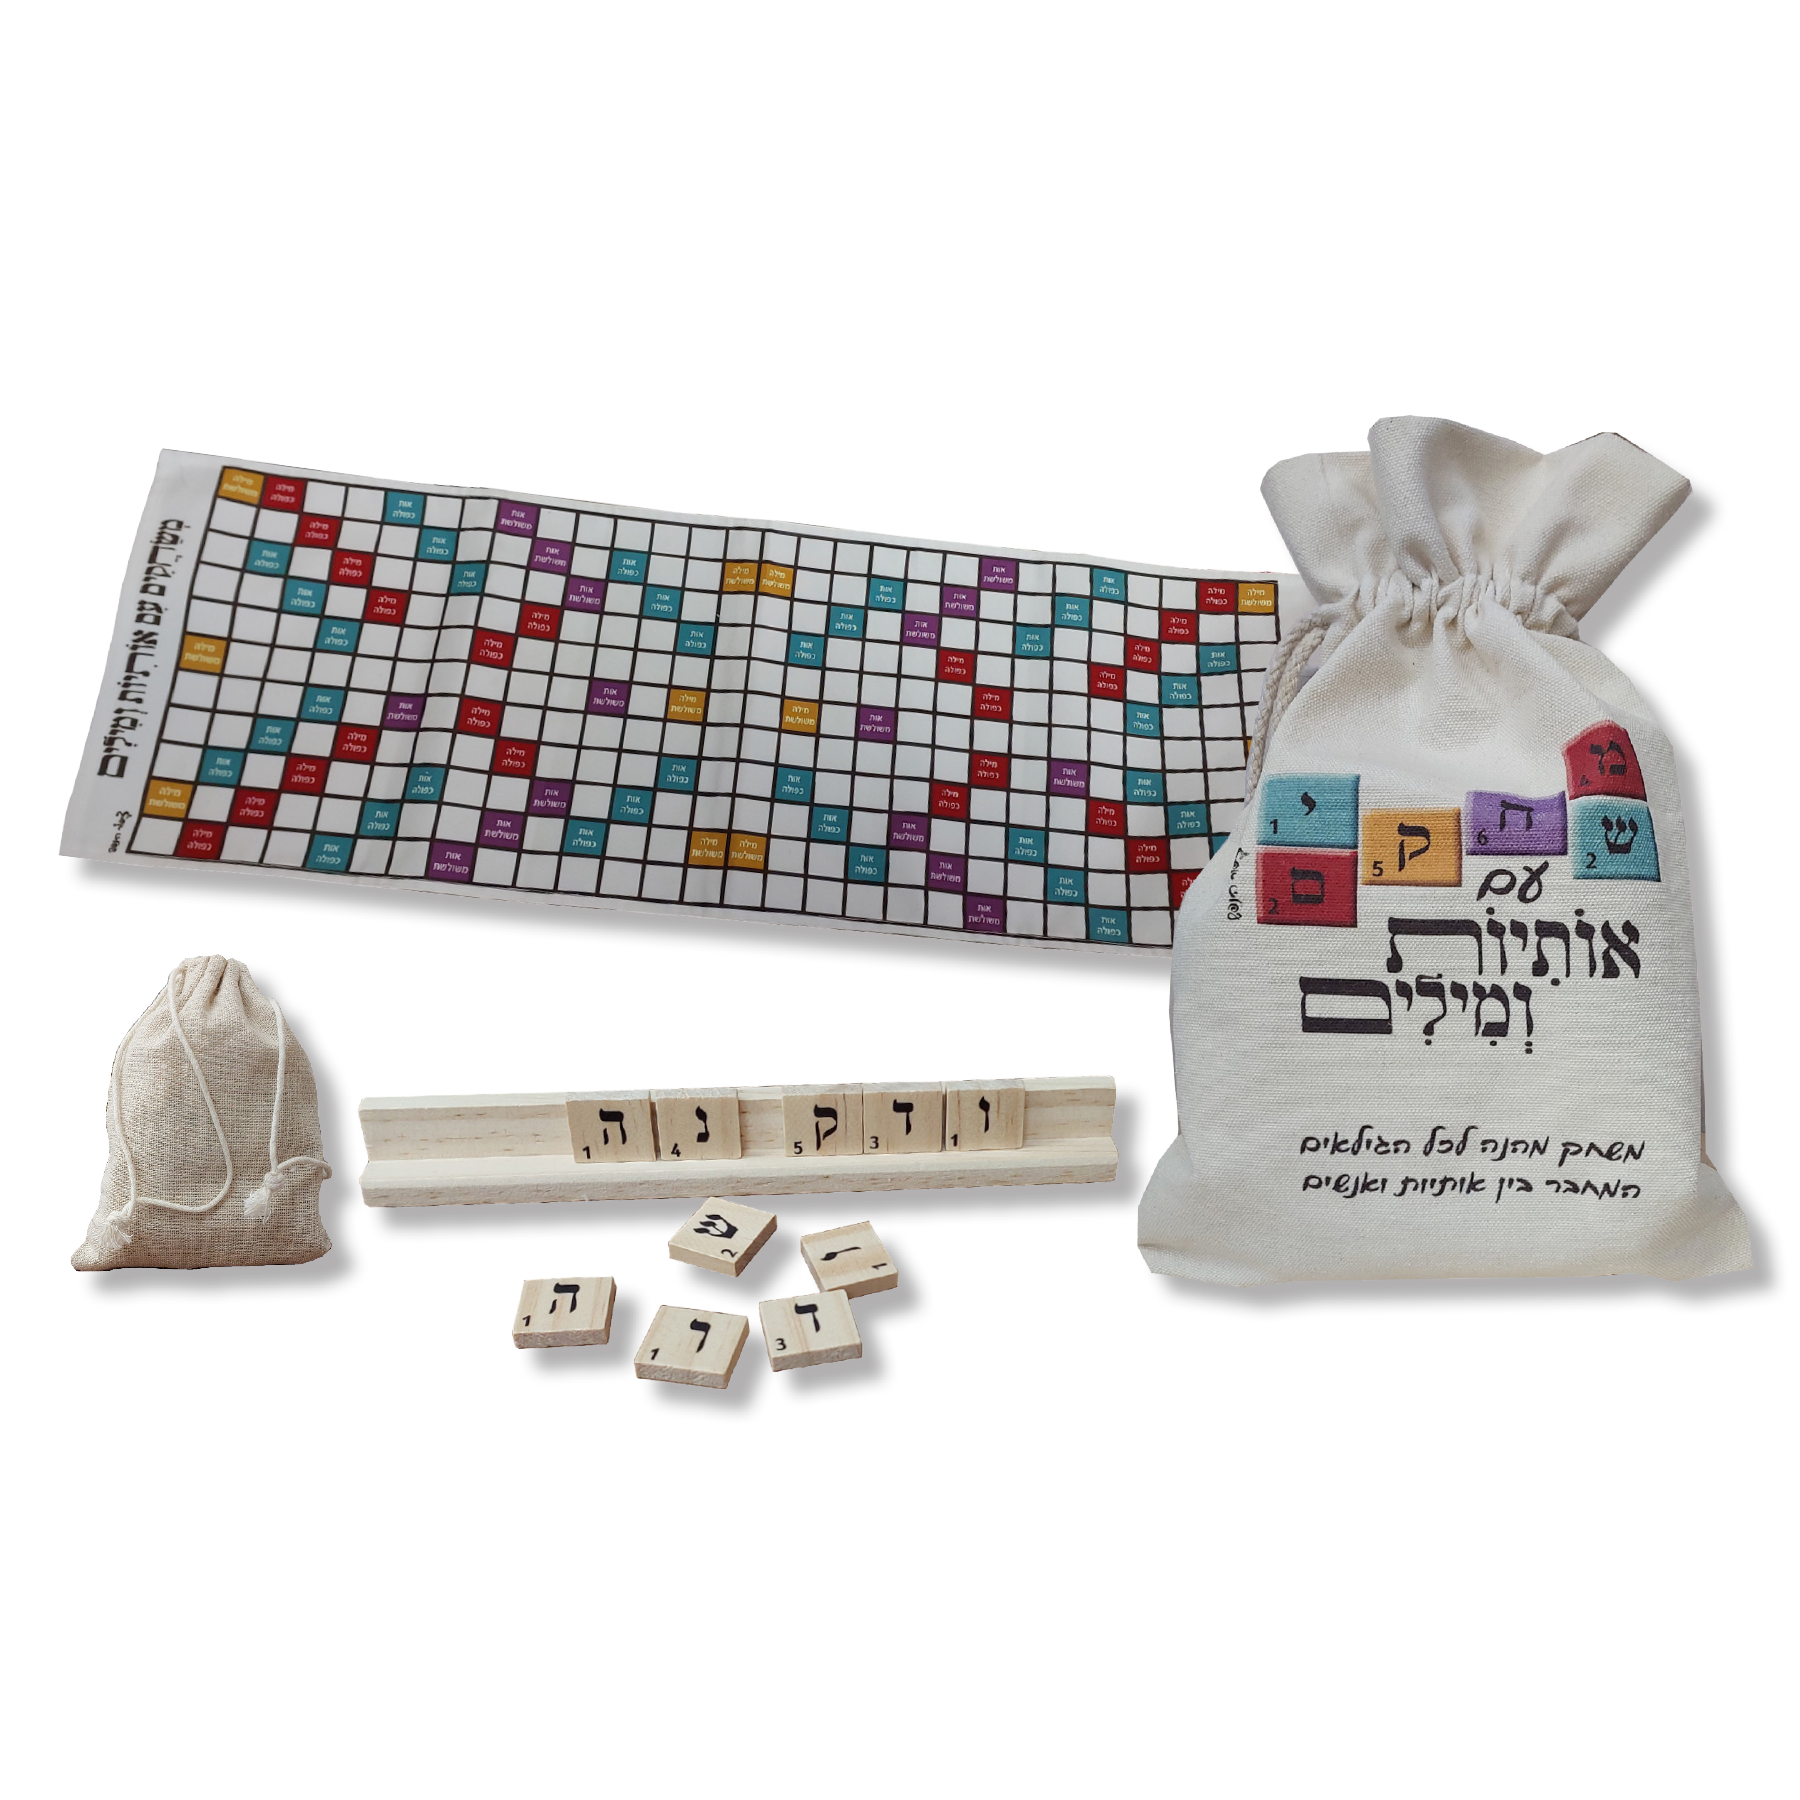 משחקים באותיות ומילים (סקרבל).
המשחק מכיל 4 לוחות עץ 96 אותיות מודפסות על ריבועי עץ במארז כותנה ולוח משחק.